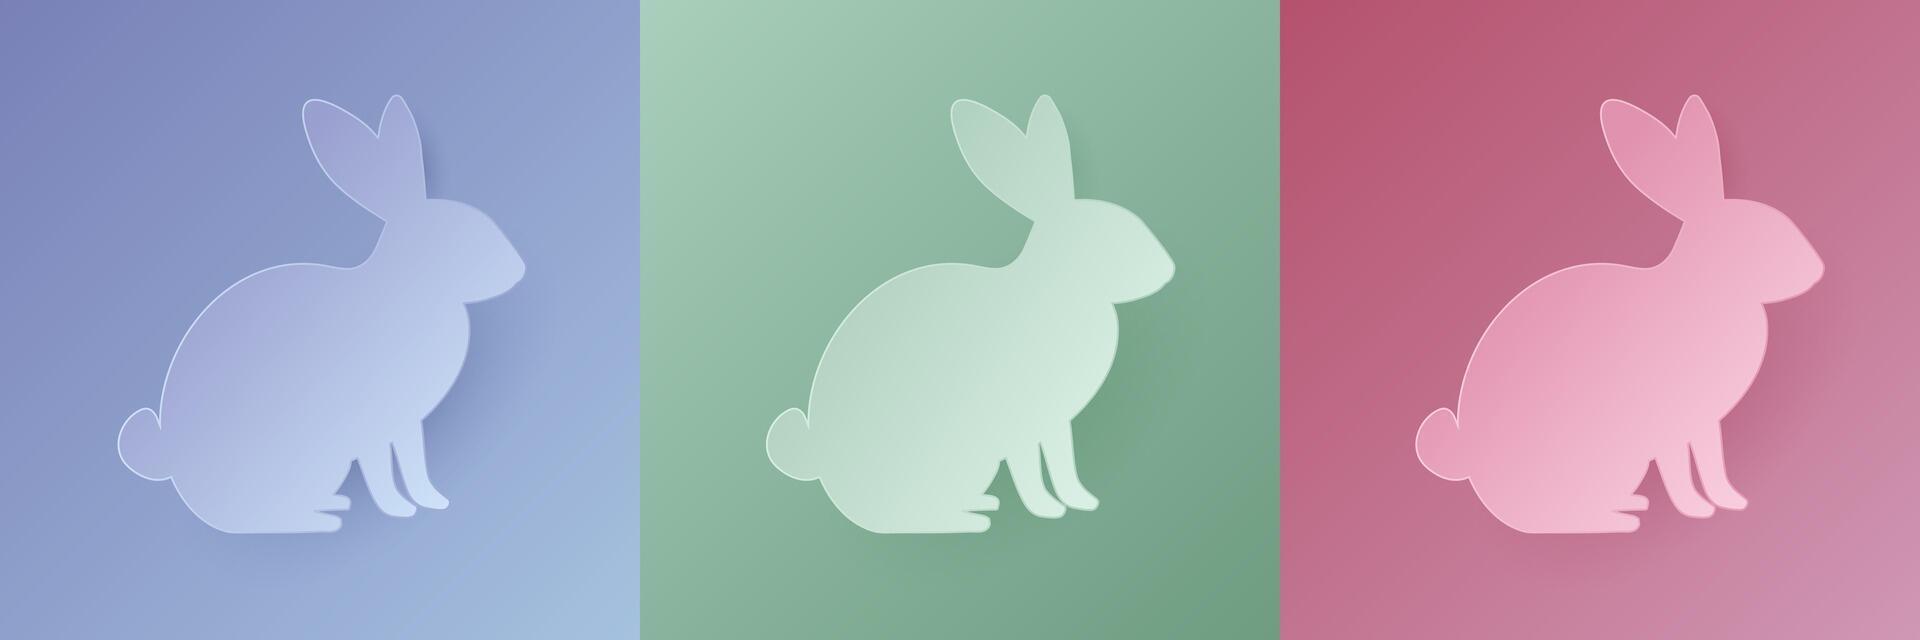 einstellen von Pastell- farbig 3d Hase gestalten Design. Sammlung von Hase Hintergrund zum Ostern Produkt, Frühling Festival Design, glücklich Ostern Karte, Präsentation, Luxus Banner, Startseite und Netz. vektor